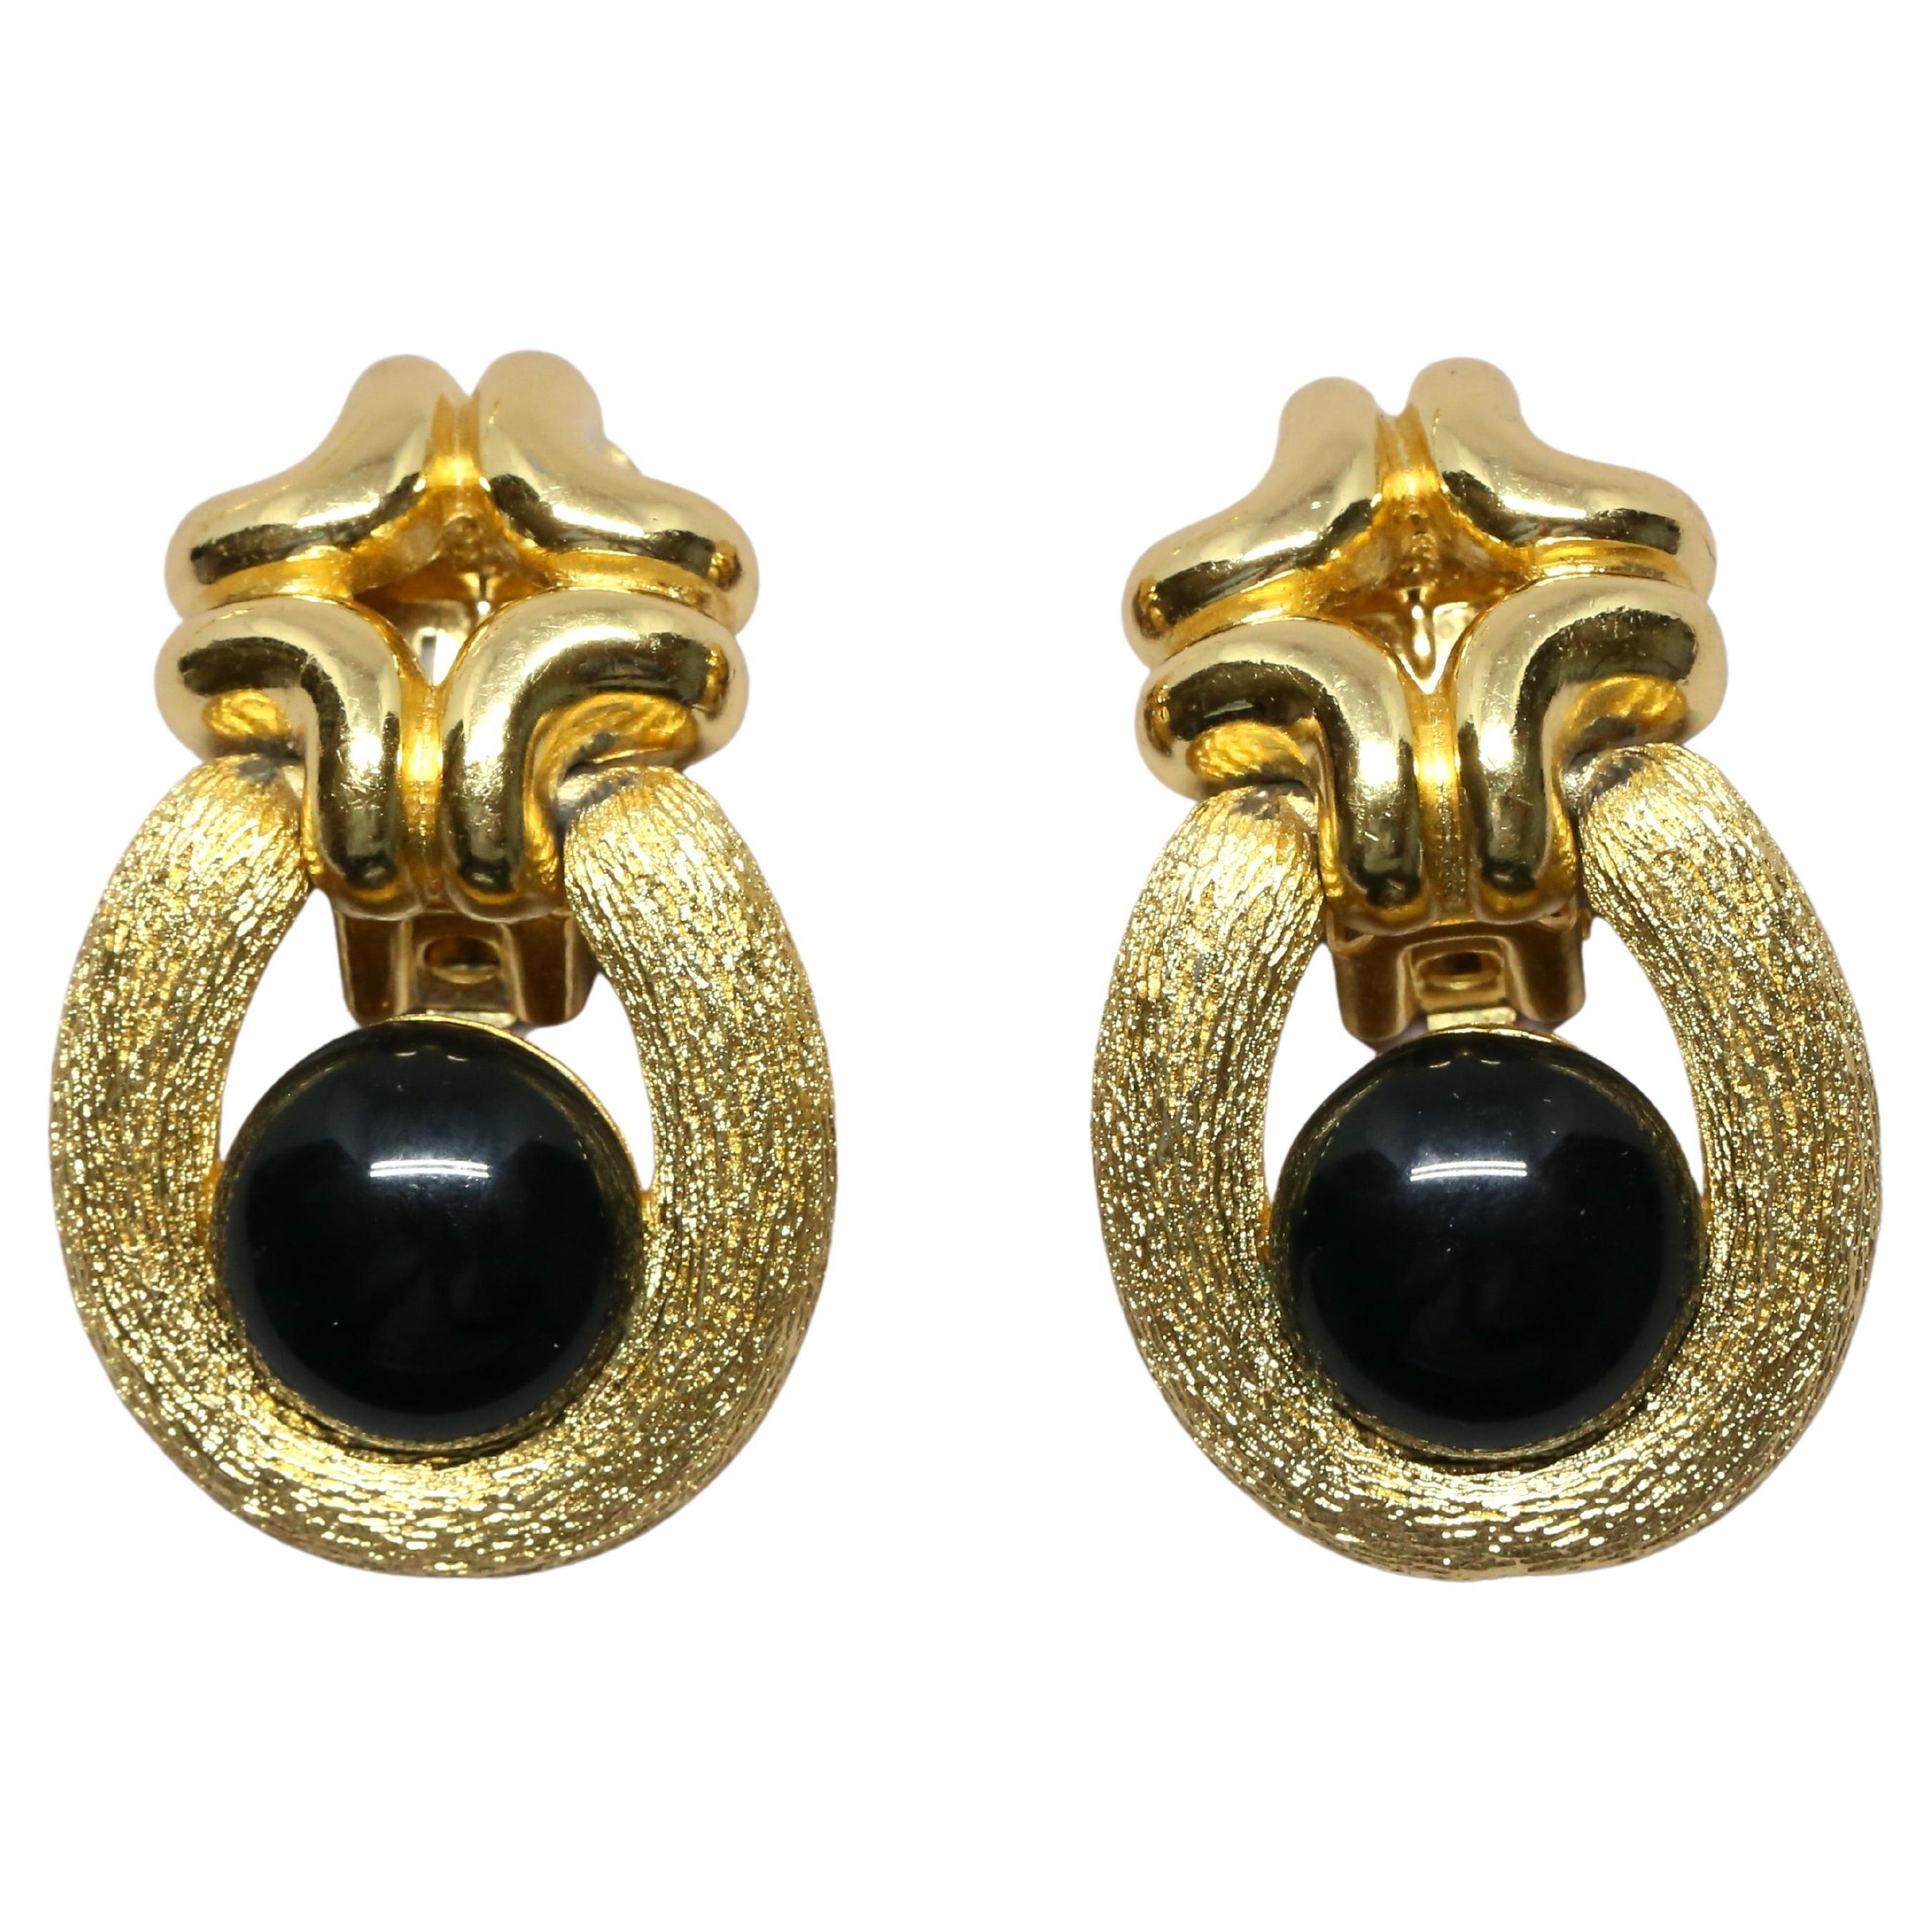 Boucles d'oreilles en métal doré texturé avec cabochons noirs de jais de Christian Dior datant des années 1980. Dos à pince. Mesures approximatives : un peu moins de 1,75